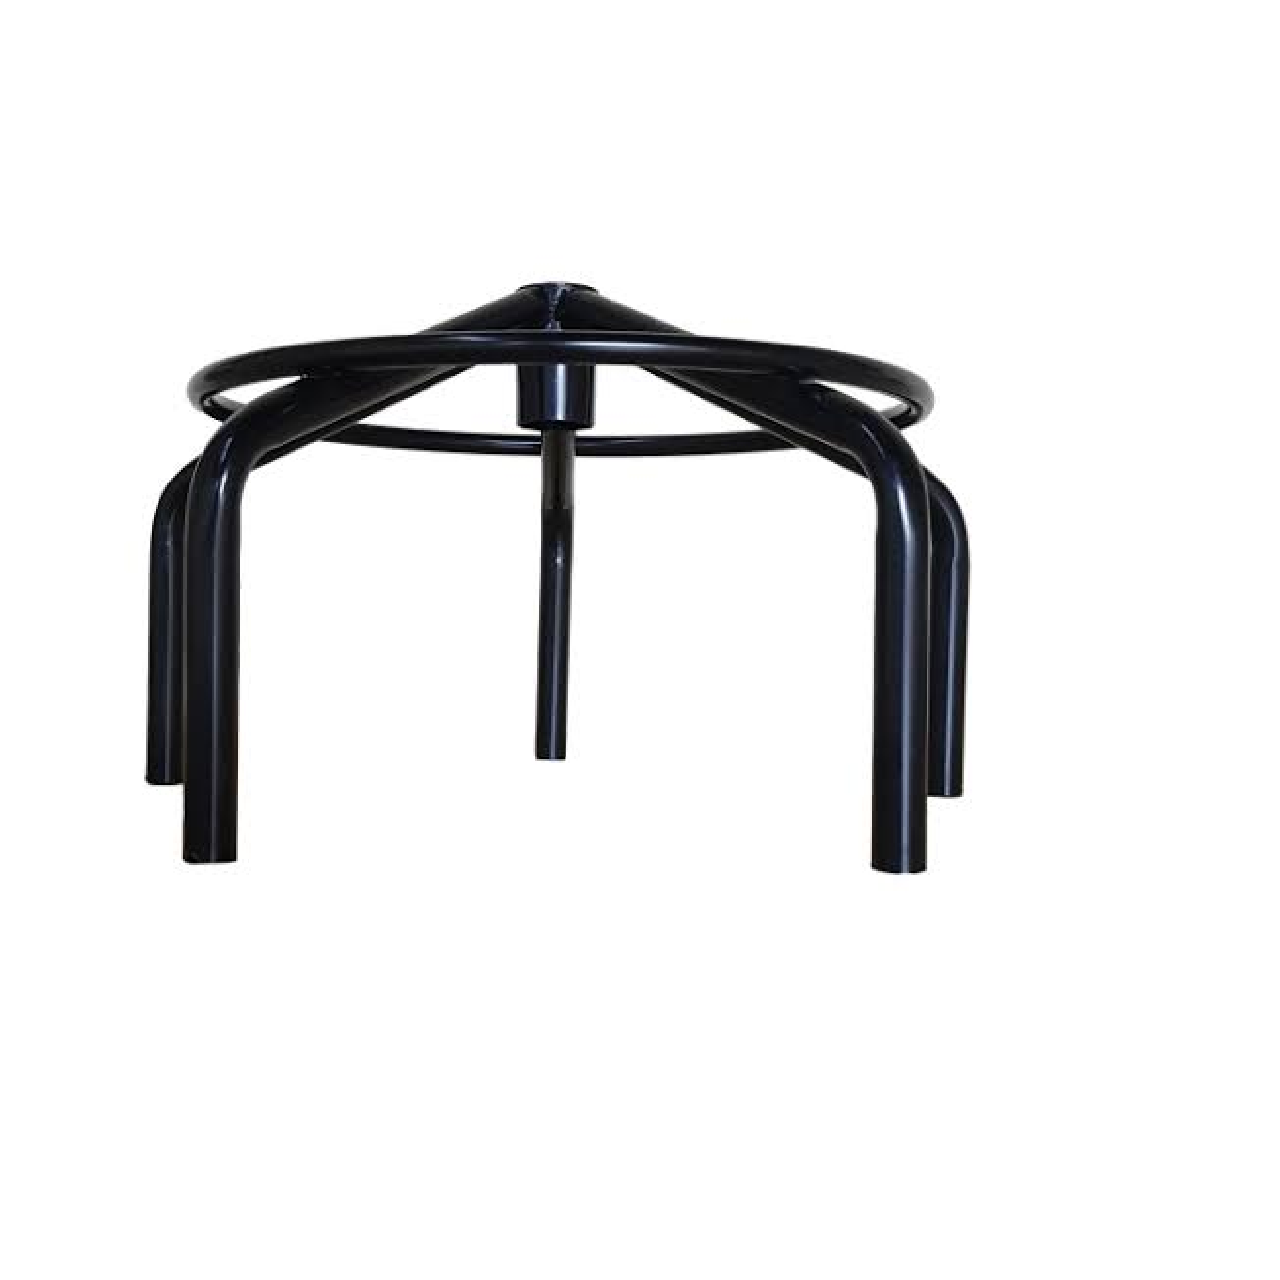 Cadeira Caixa EXECUTIVA LISA com Braços Reguláveis – (Aranha MARTIFLEX) – Cor Preta - 5